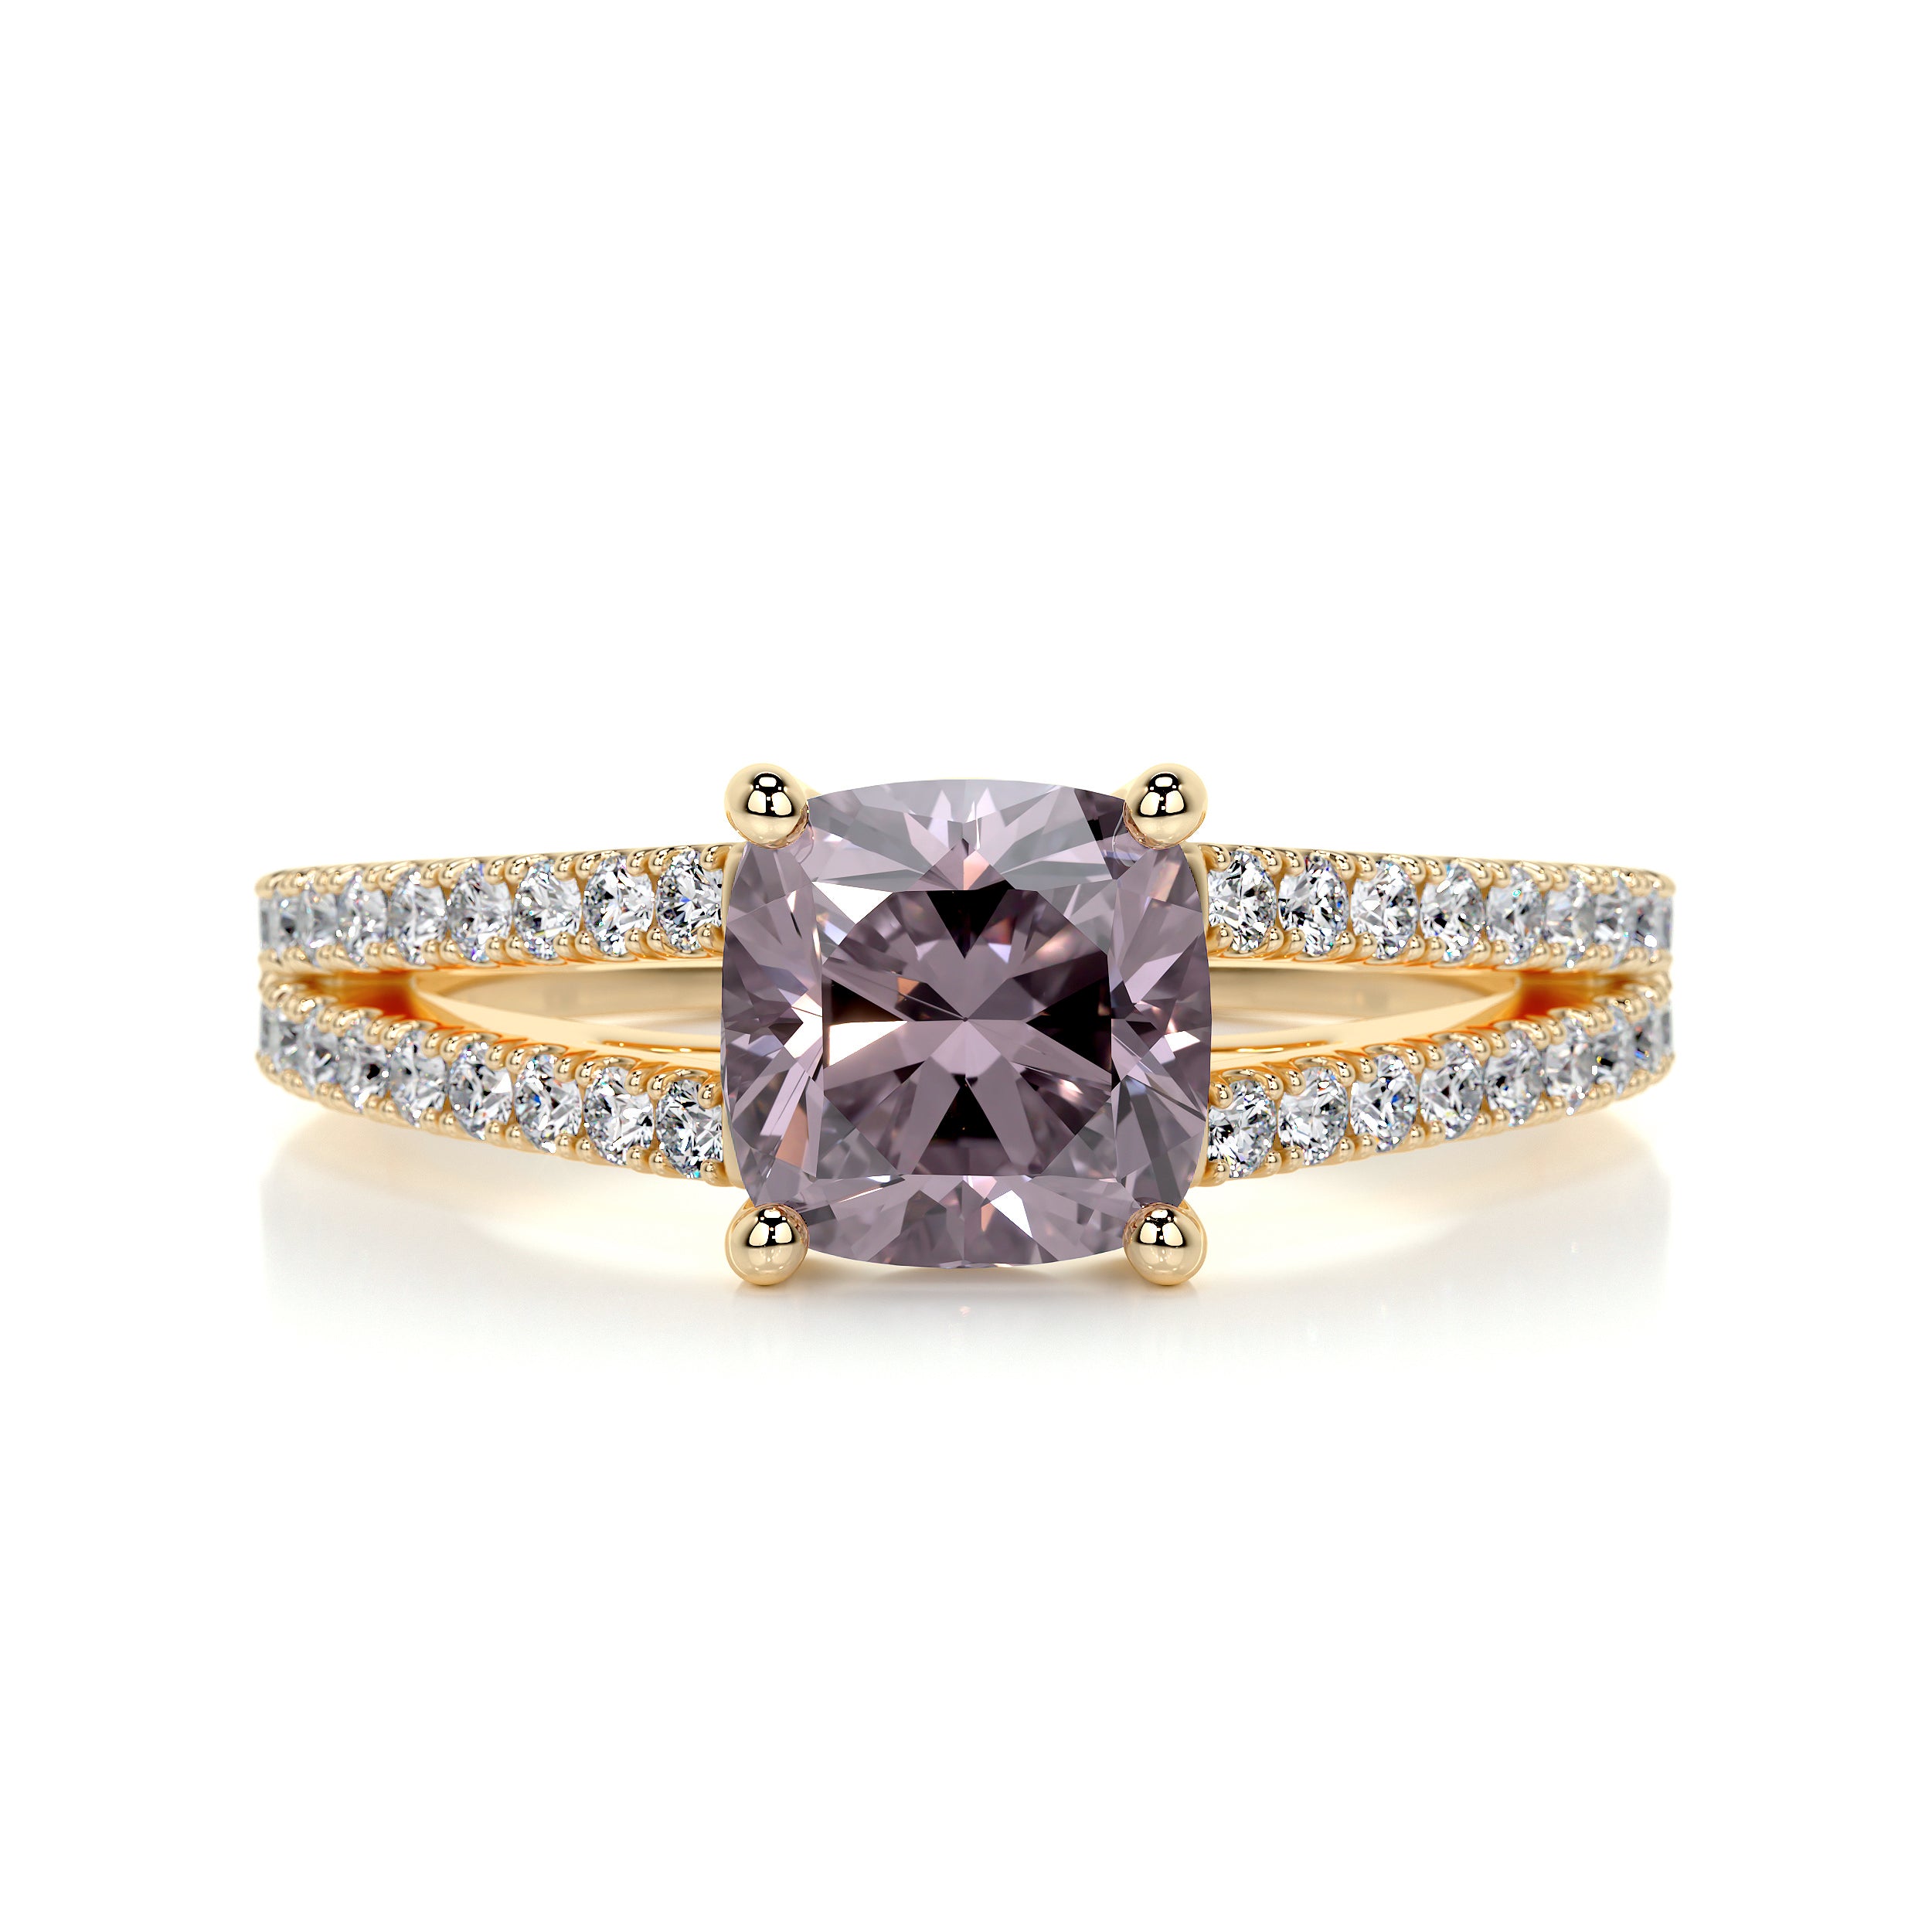 Sadie Gemstone & Diamonds Ring   (2.05 Carat) -18K Yellow Gold